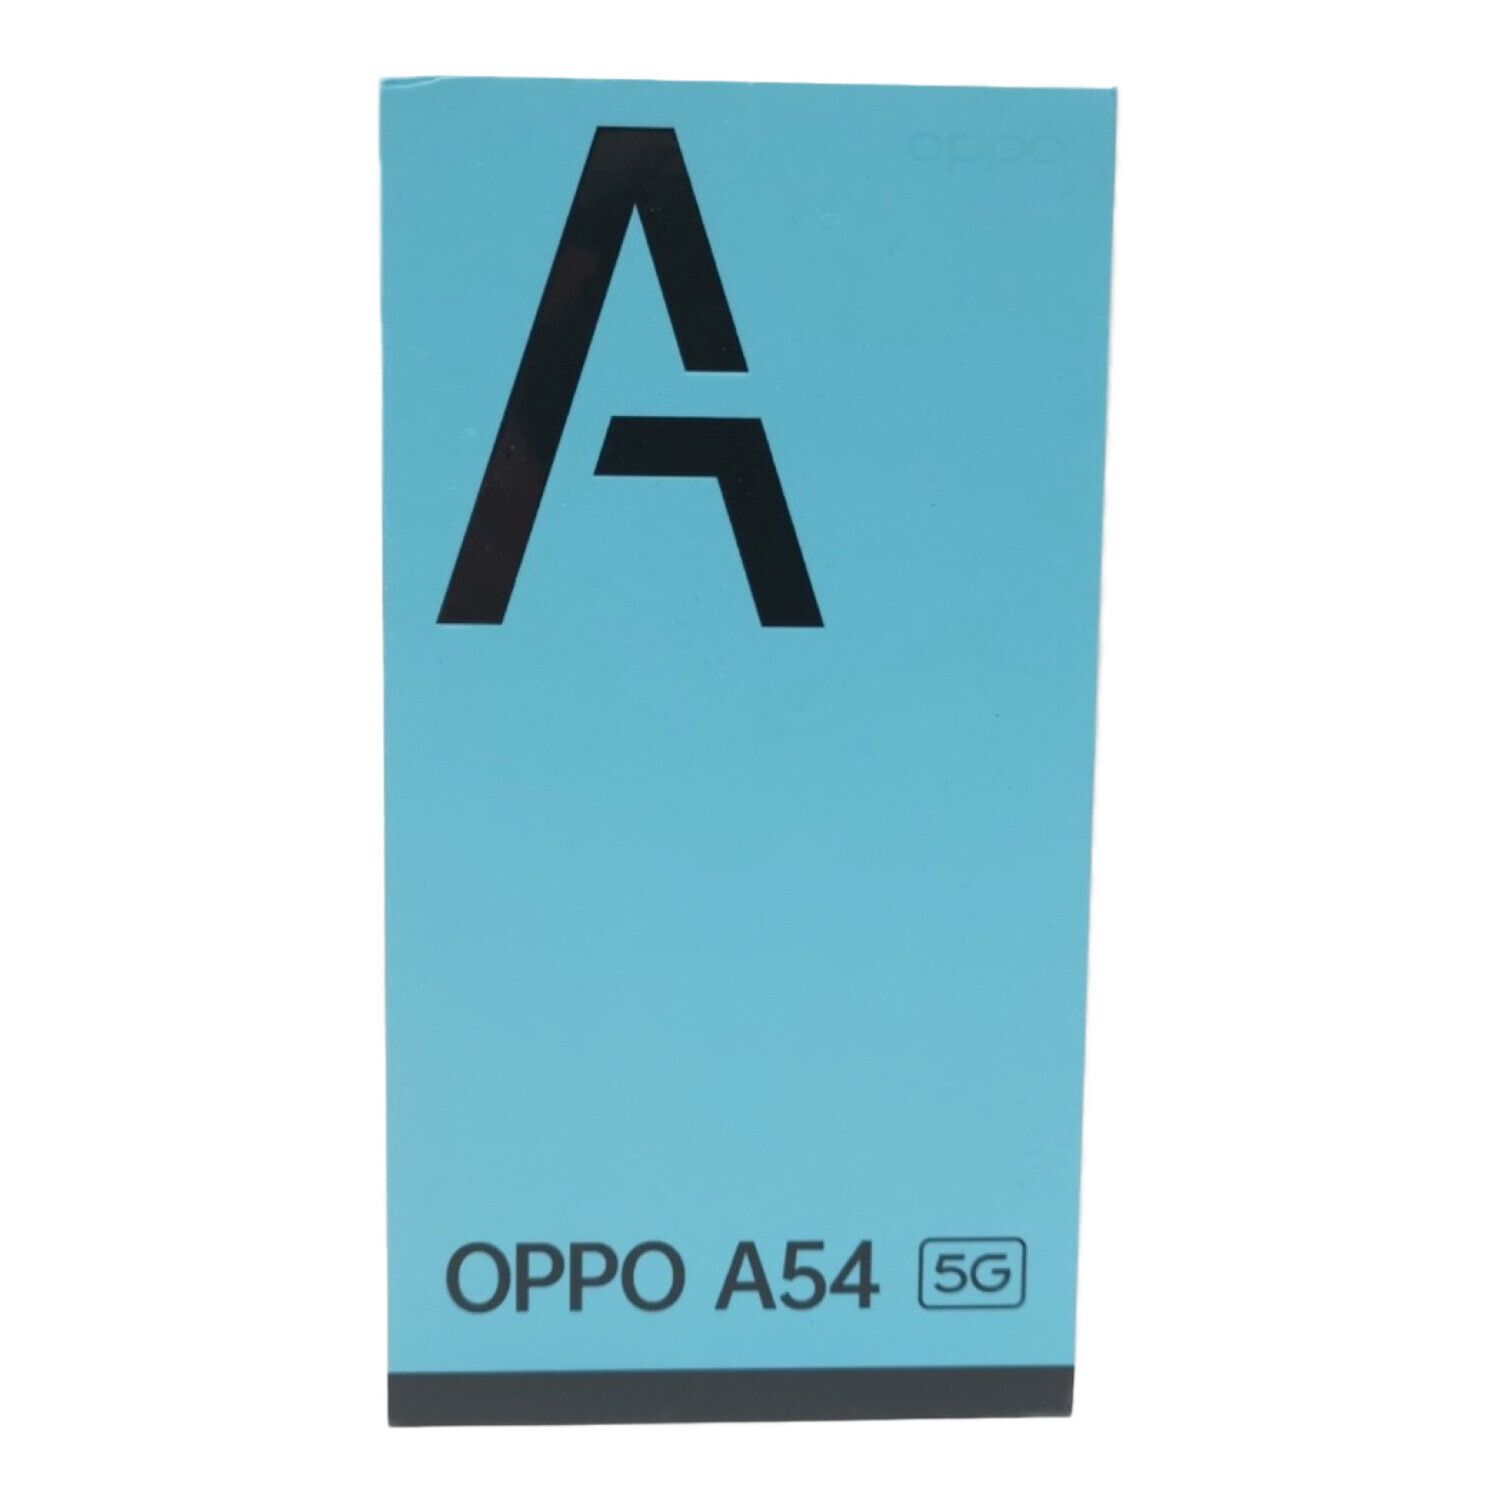 OPPO オッポ A54 5G OPG02 64GB アンドロイド スマホ